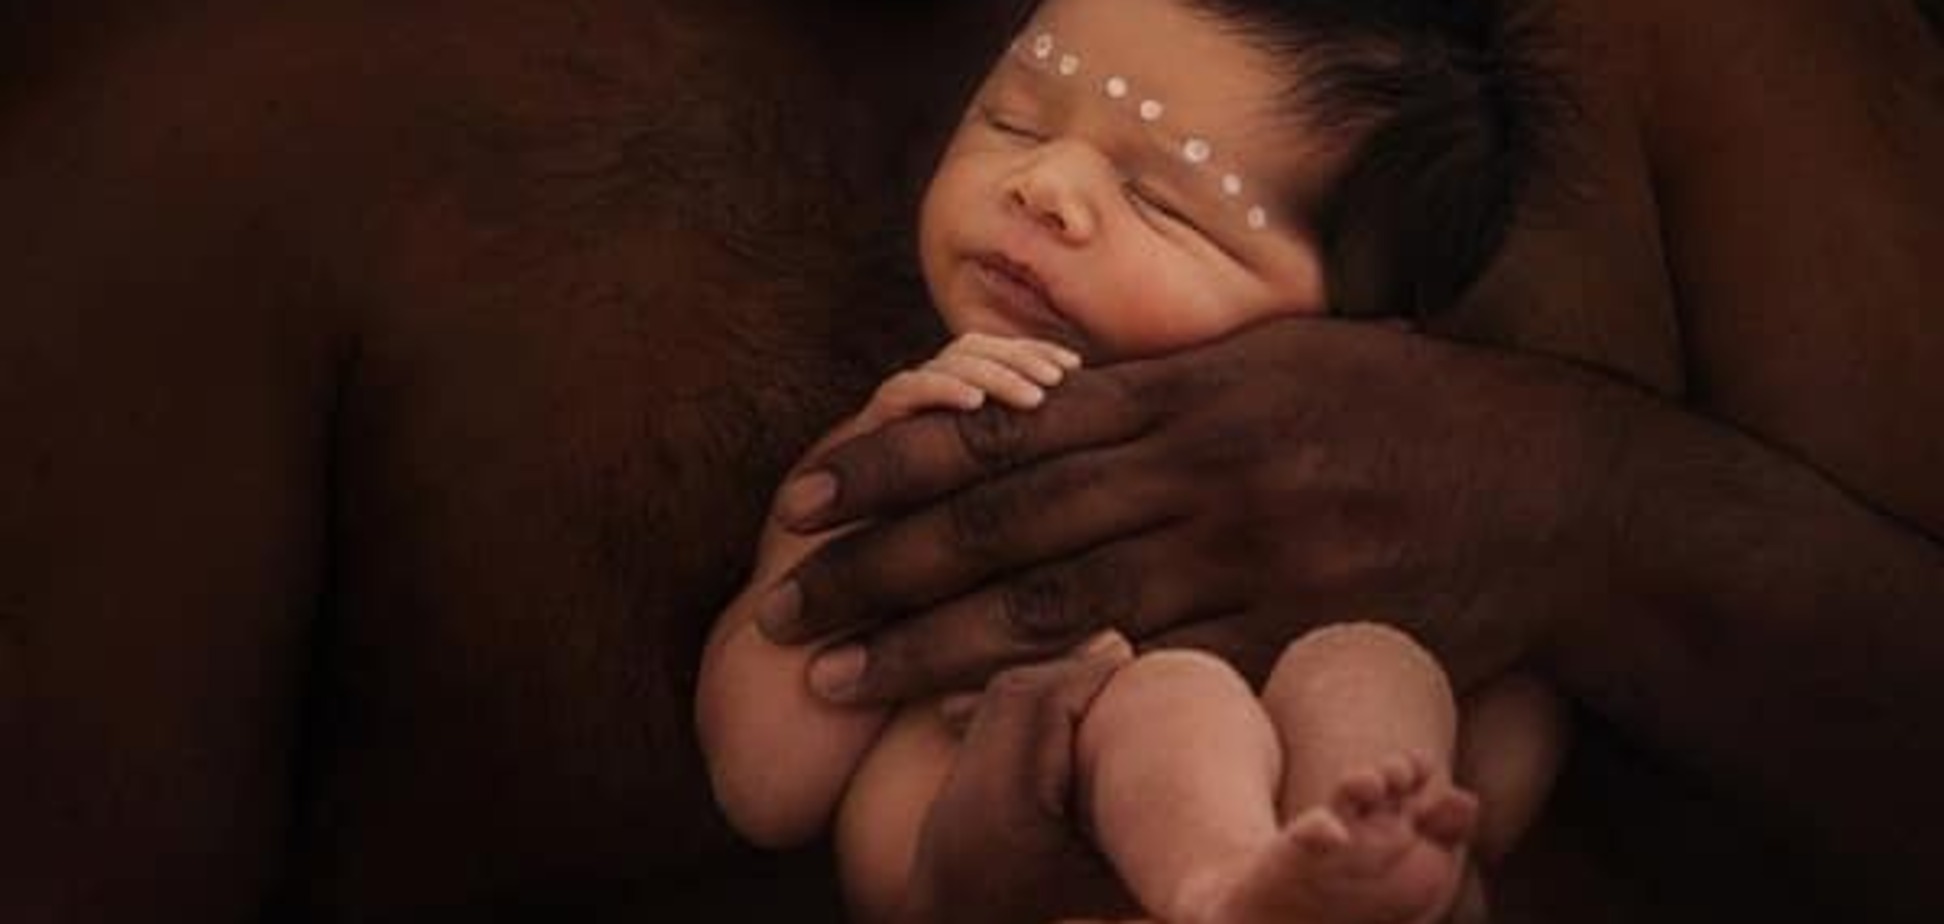 Младенцы аборигенов: традиции экзотического народа. Фотопроект